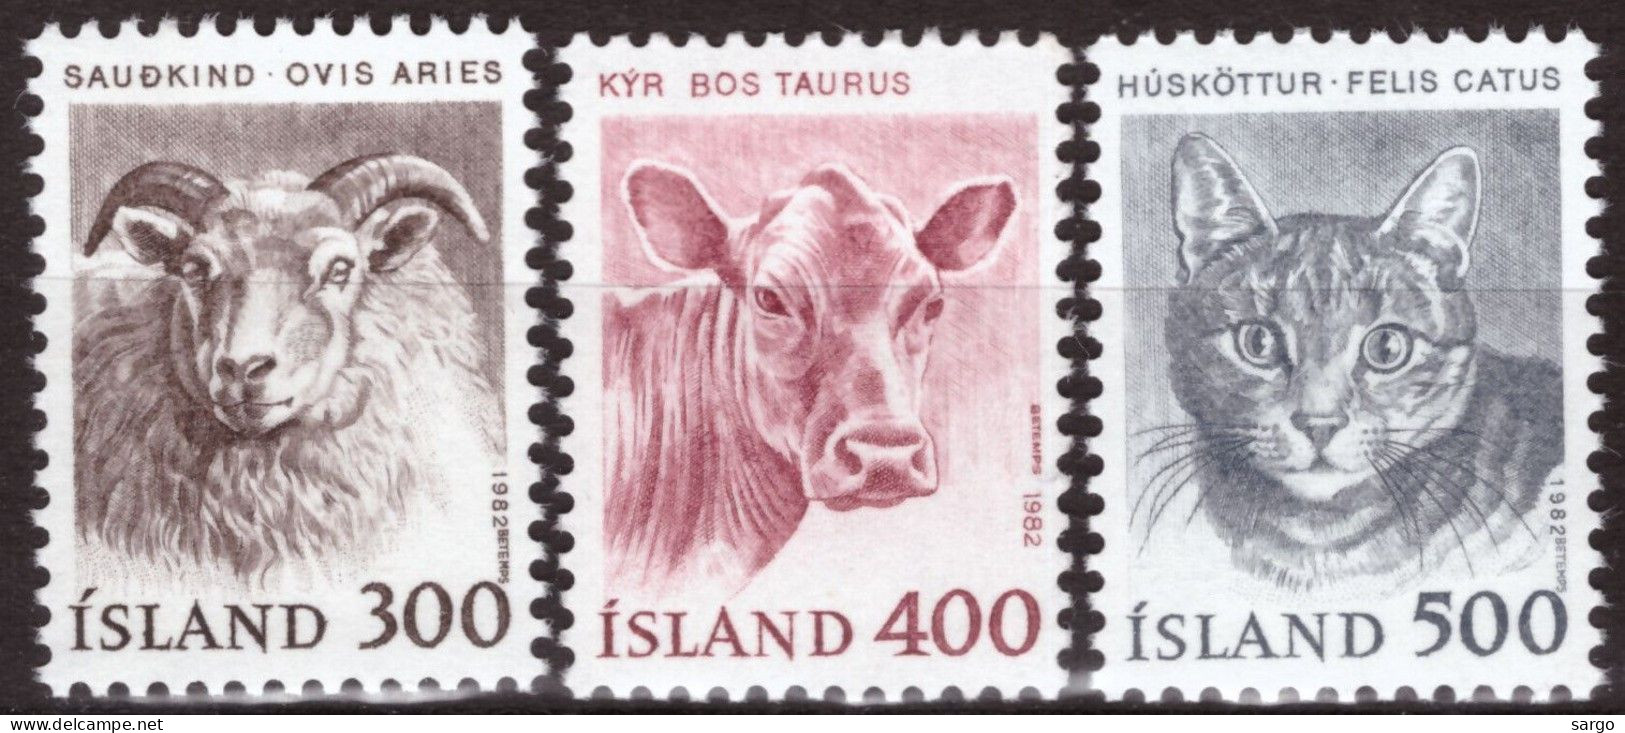 ICELAND  - 1982 -  FAUNA - ANIMALS -  3 V - MNH - SHEEP - CROW - CAT - - Fattoria